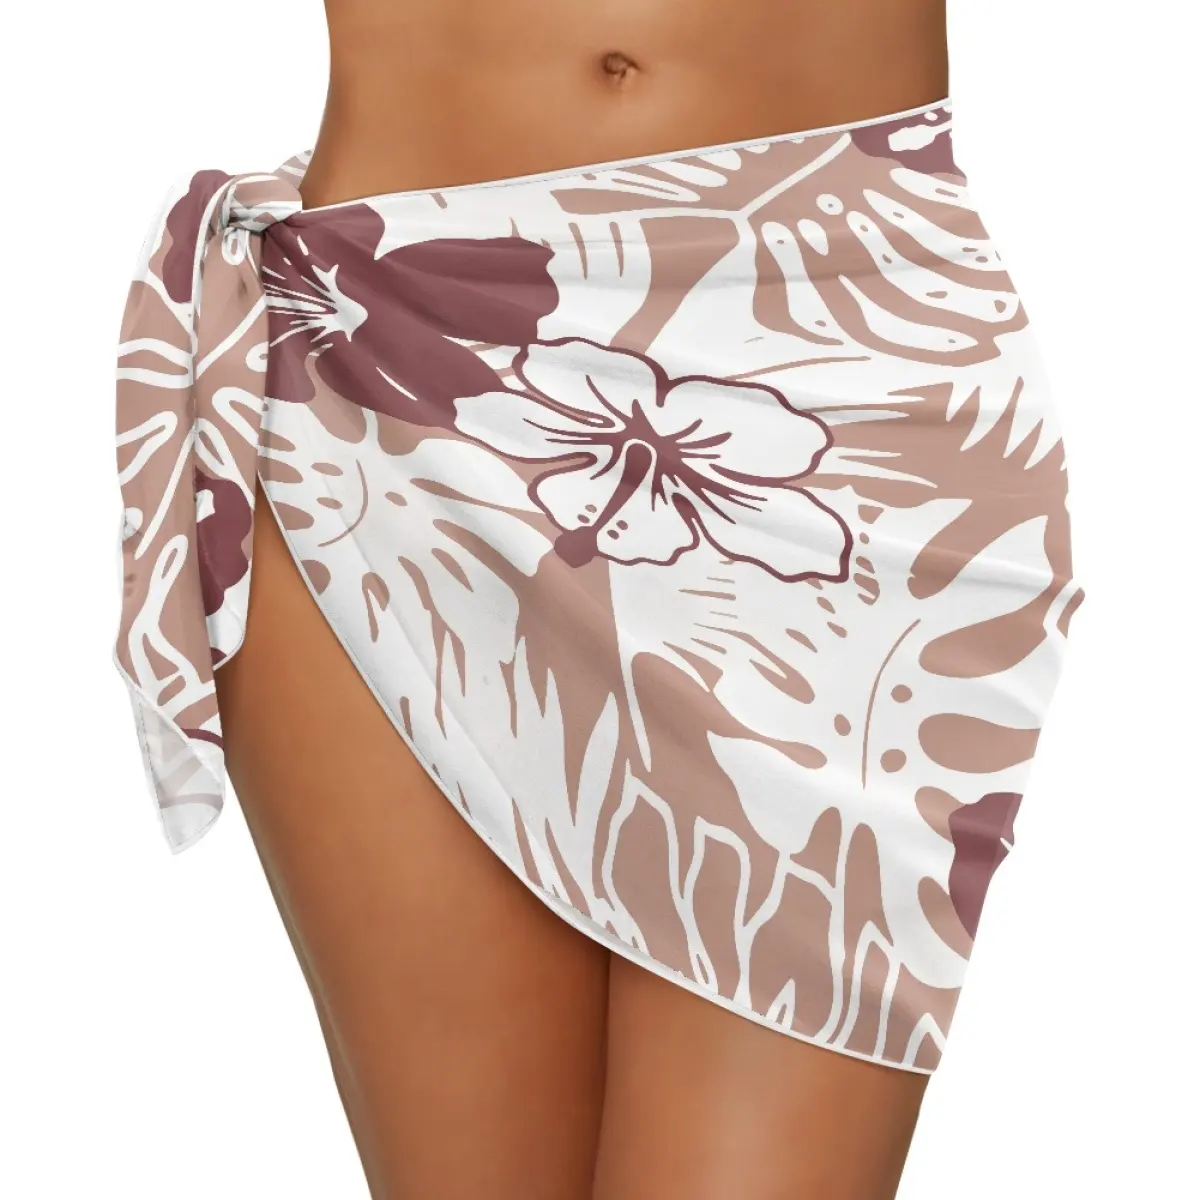 Samoan hình xăm Plumeria in Bikini Cover up Ngắn phụ nữ bãi biển váy đồ bơi tùy chỉnh kết thúc tốt đẹp sarong váy áo tắm thả vận chuyển